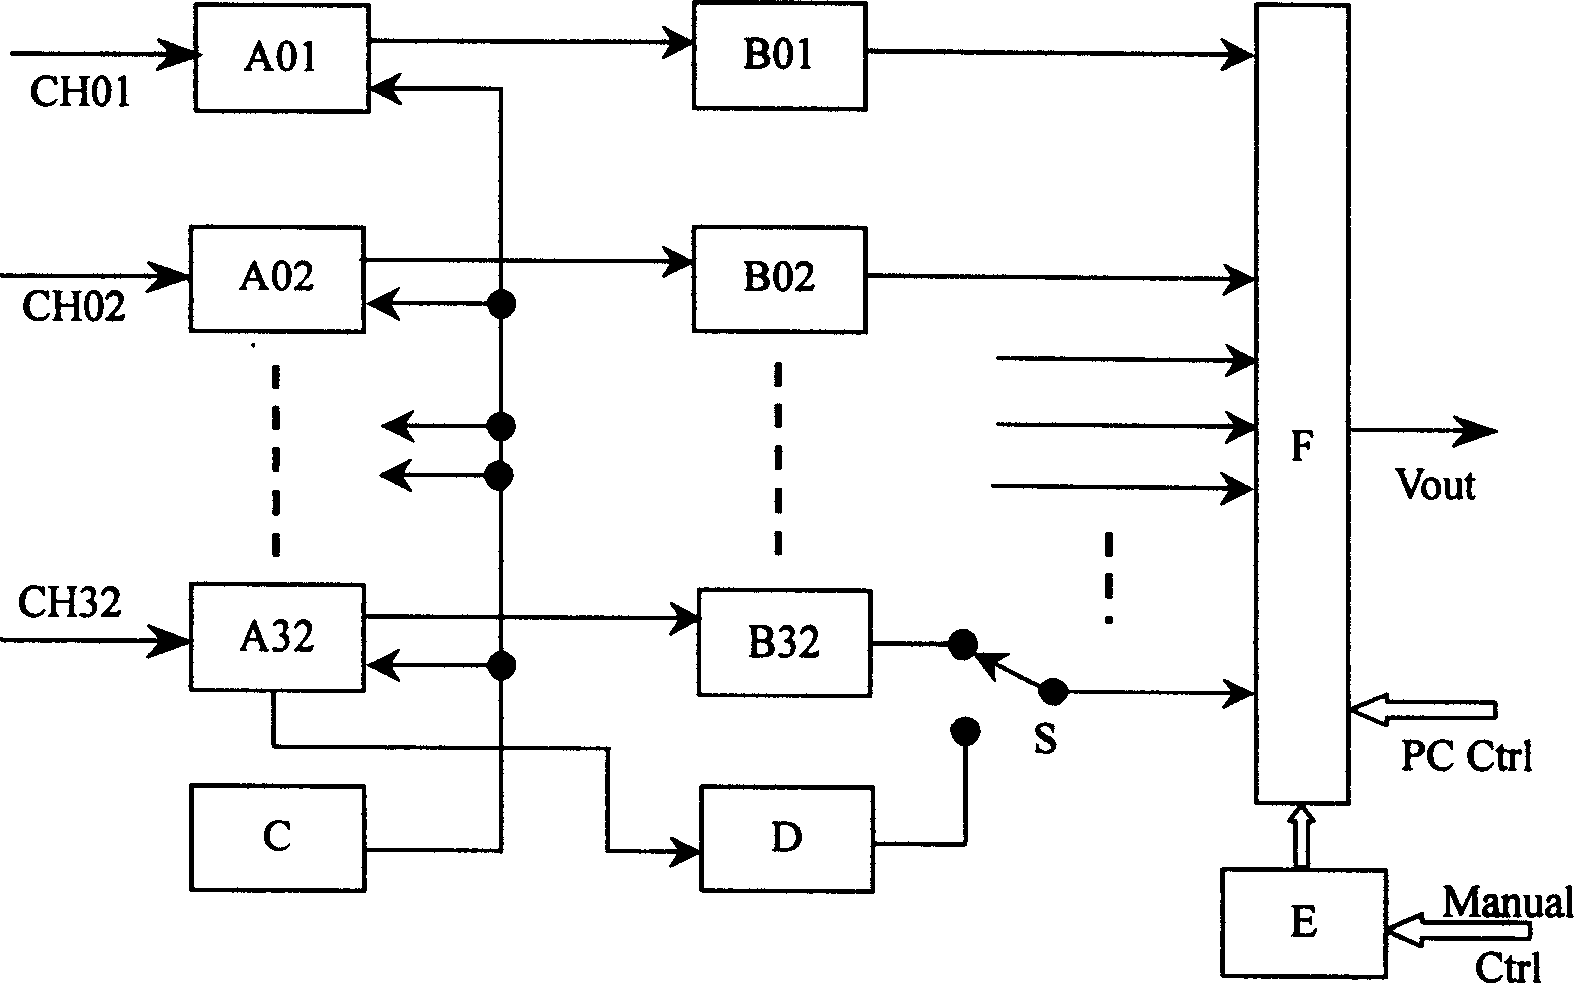 Preprocessing circuit for multiple temperature signals